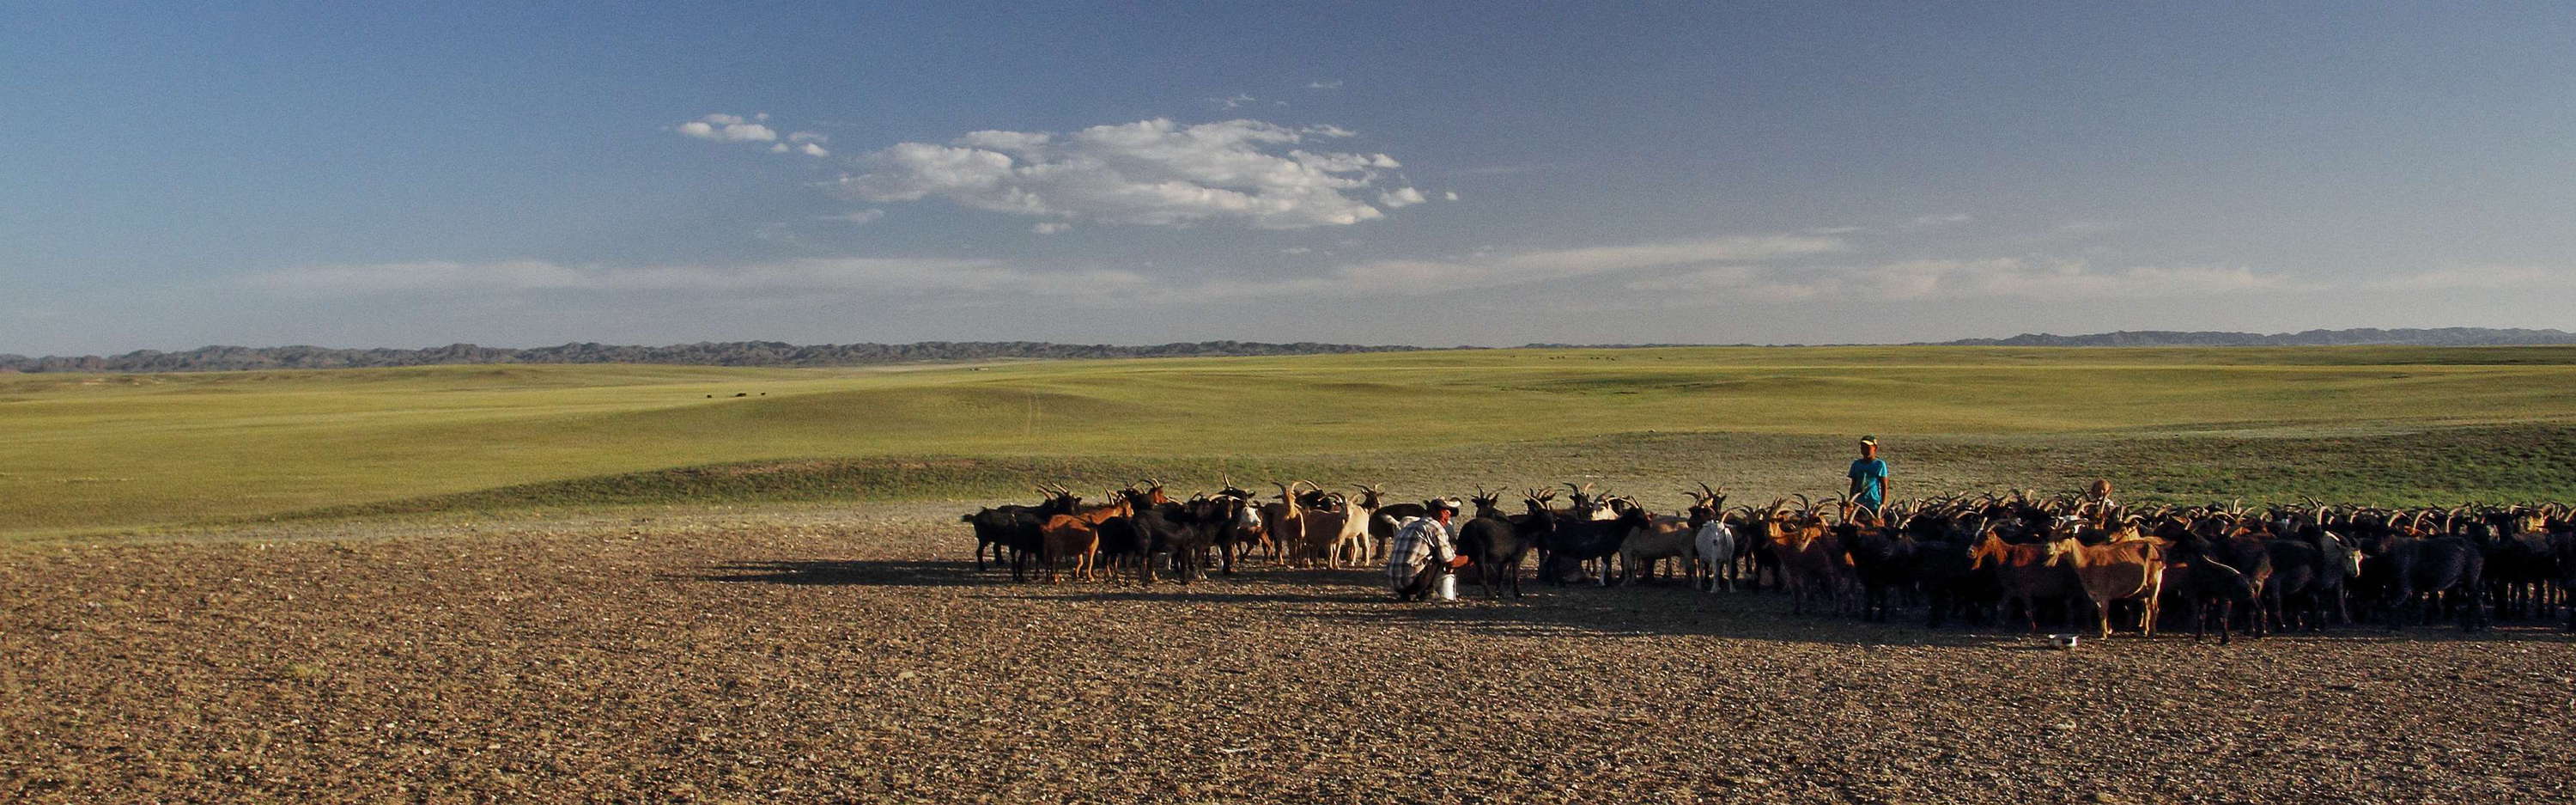 Gobi  |  Steppe with livestock